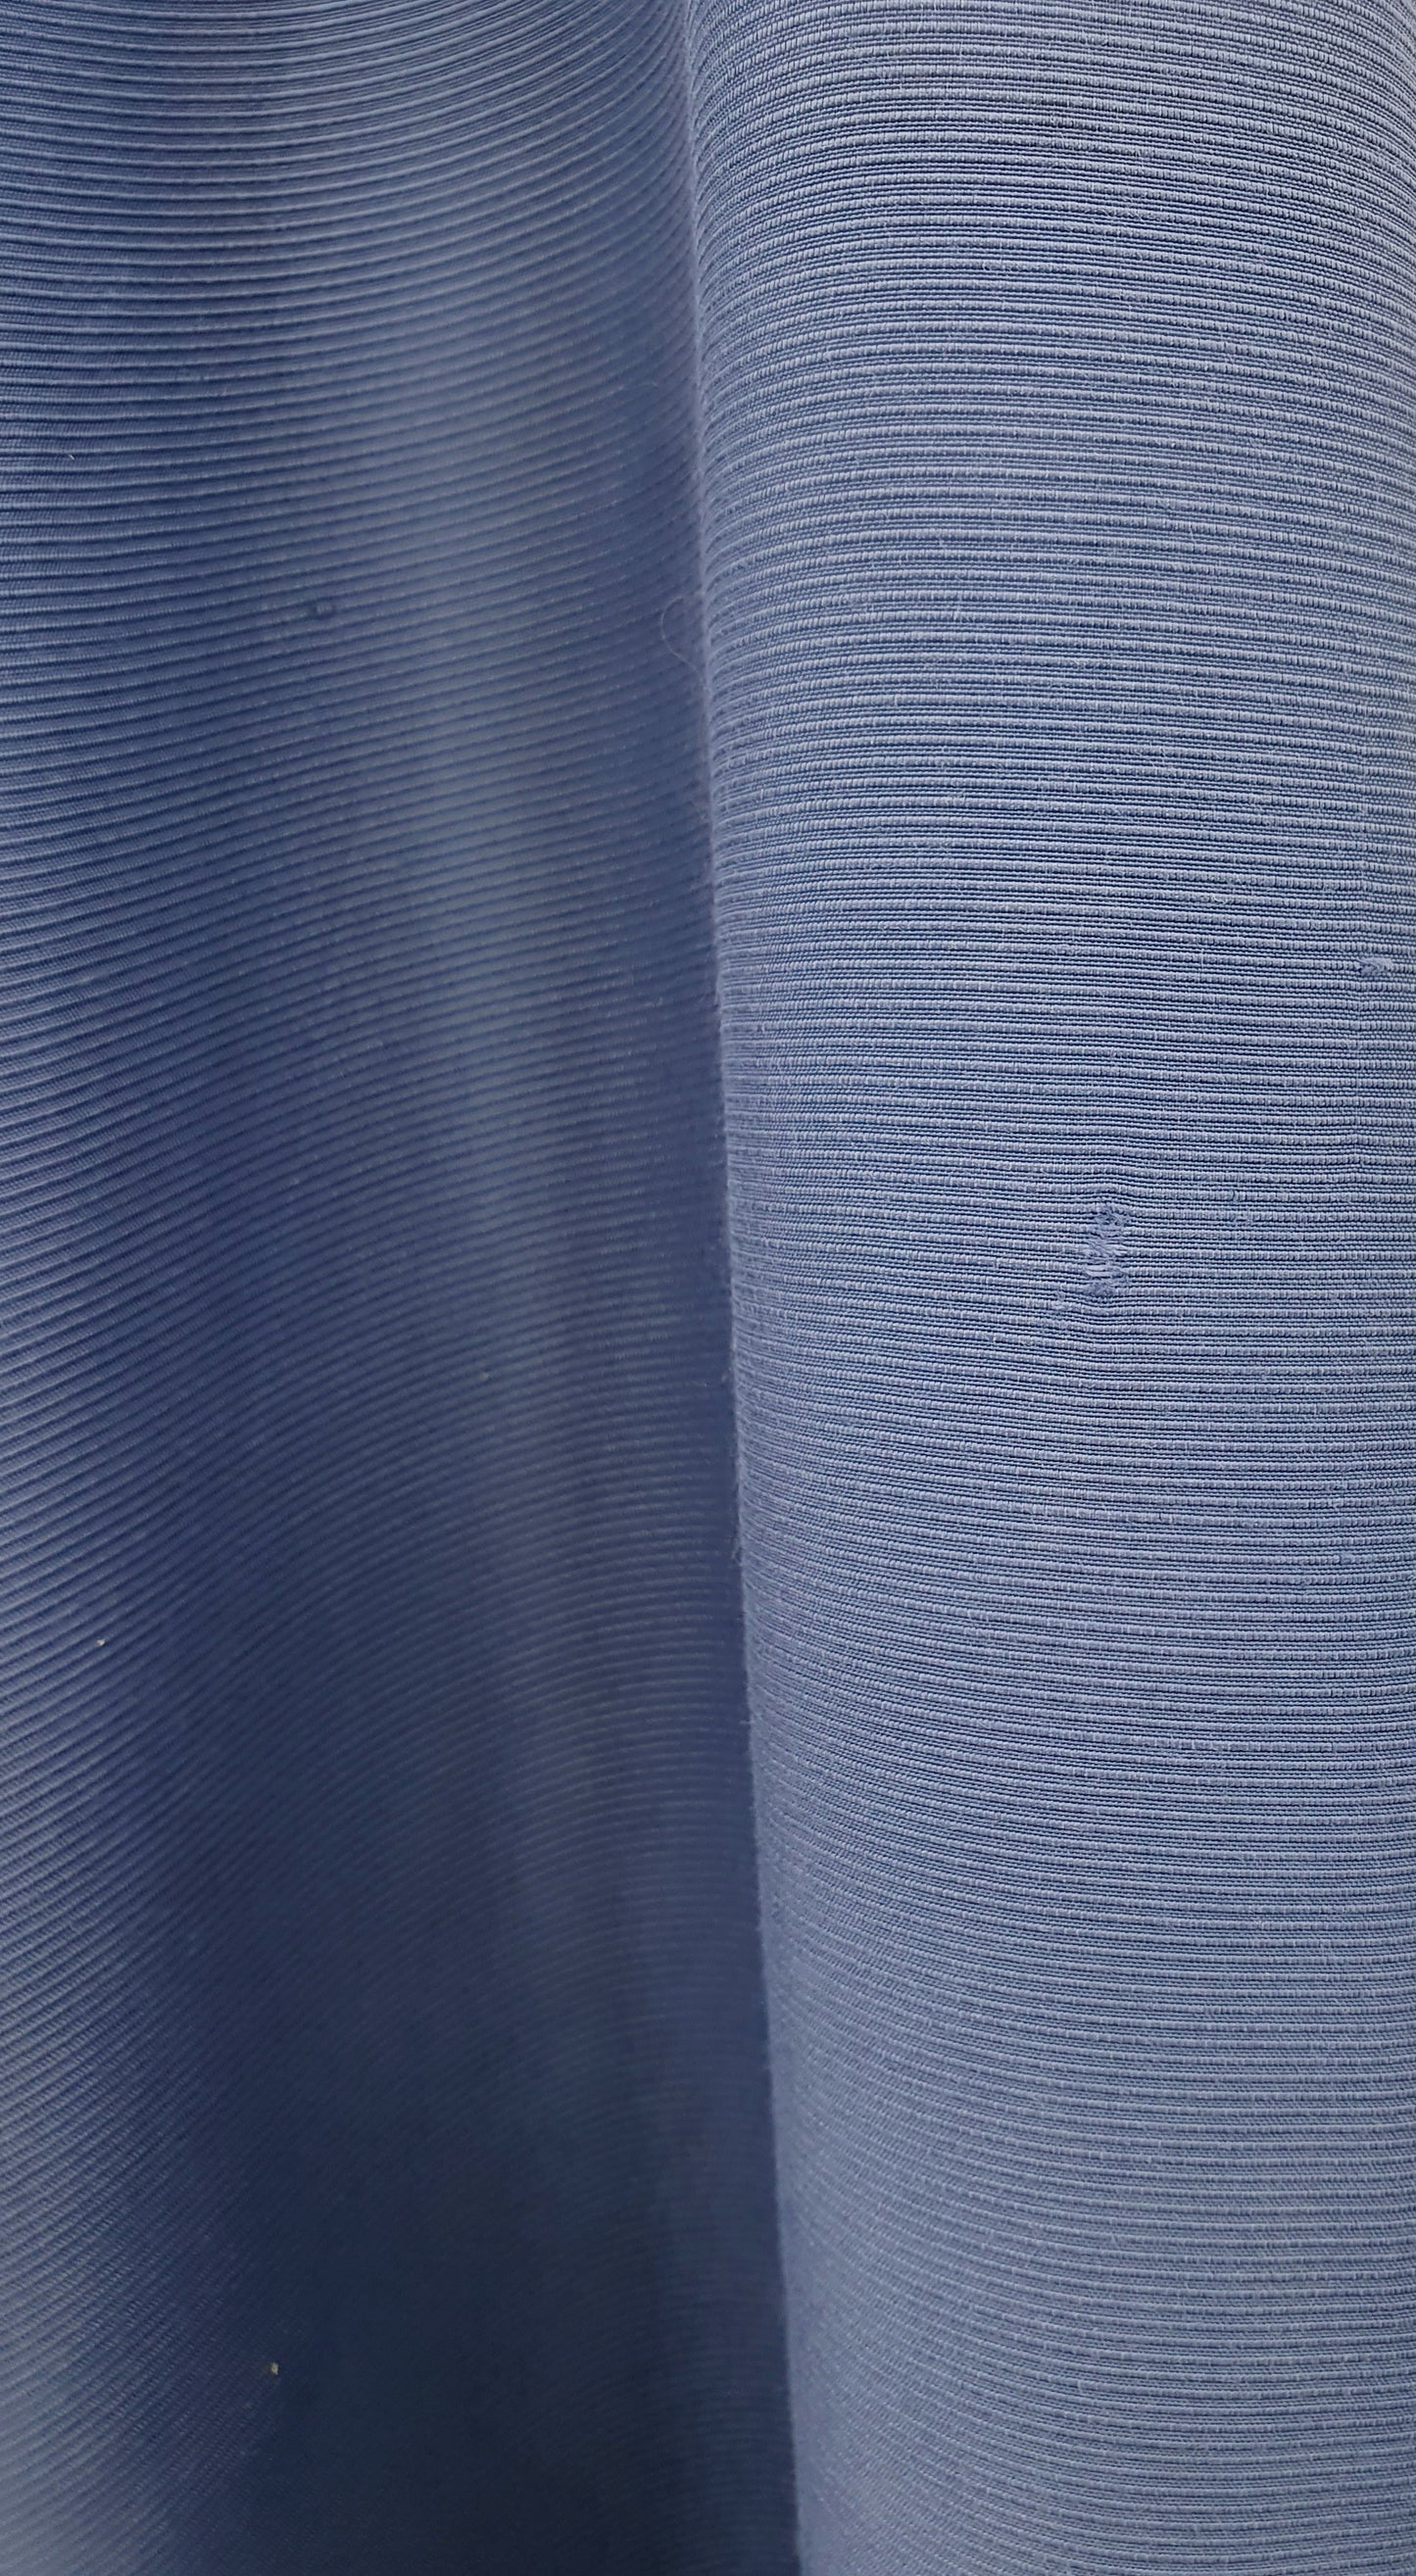 Sininen A-linjainen hame, vyöt.ymp. 68cm, kokoarvio 34